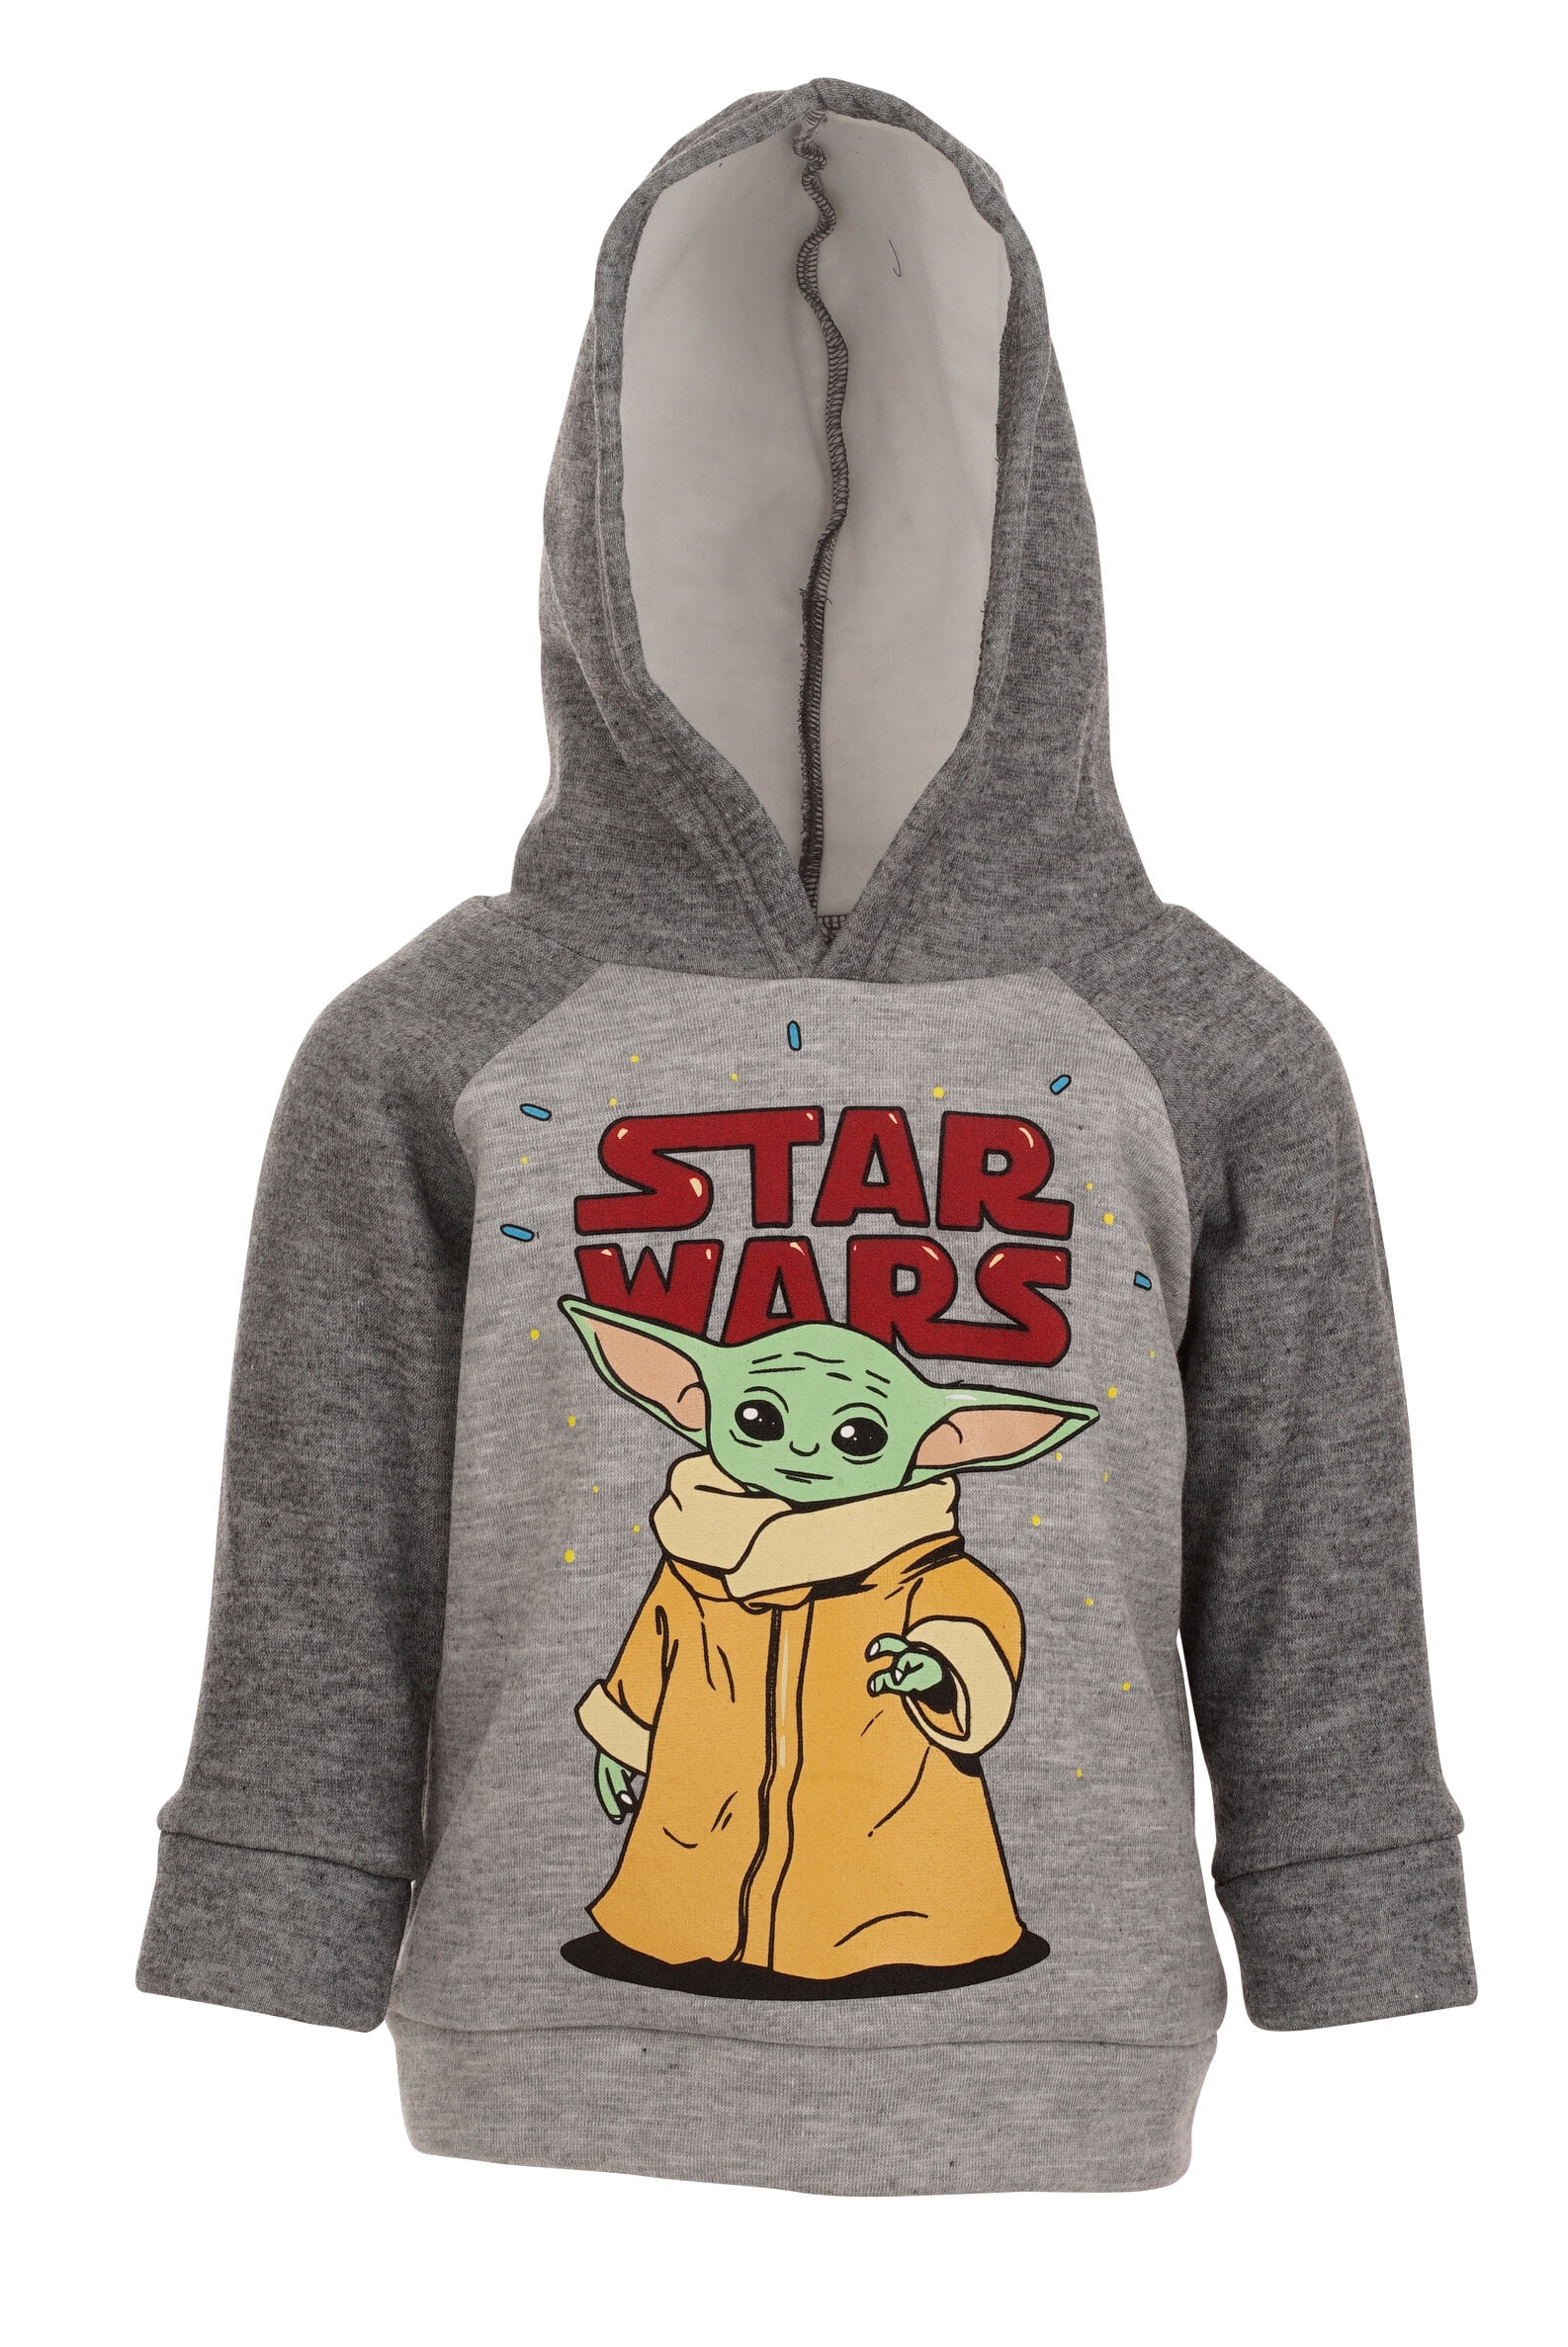 Star Wars Boys Hooded Sweatshirt 